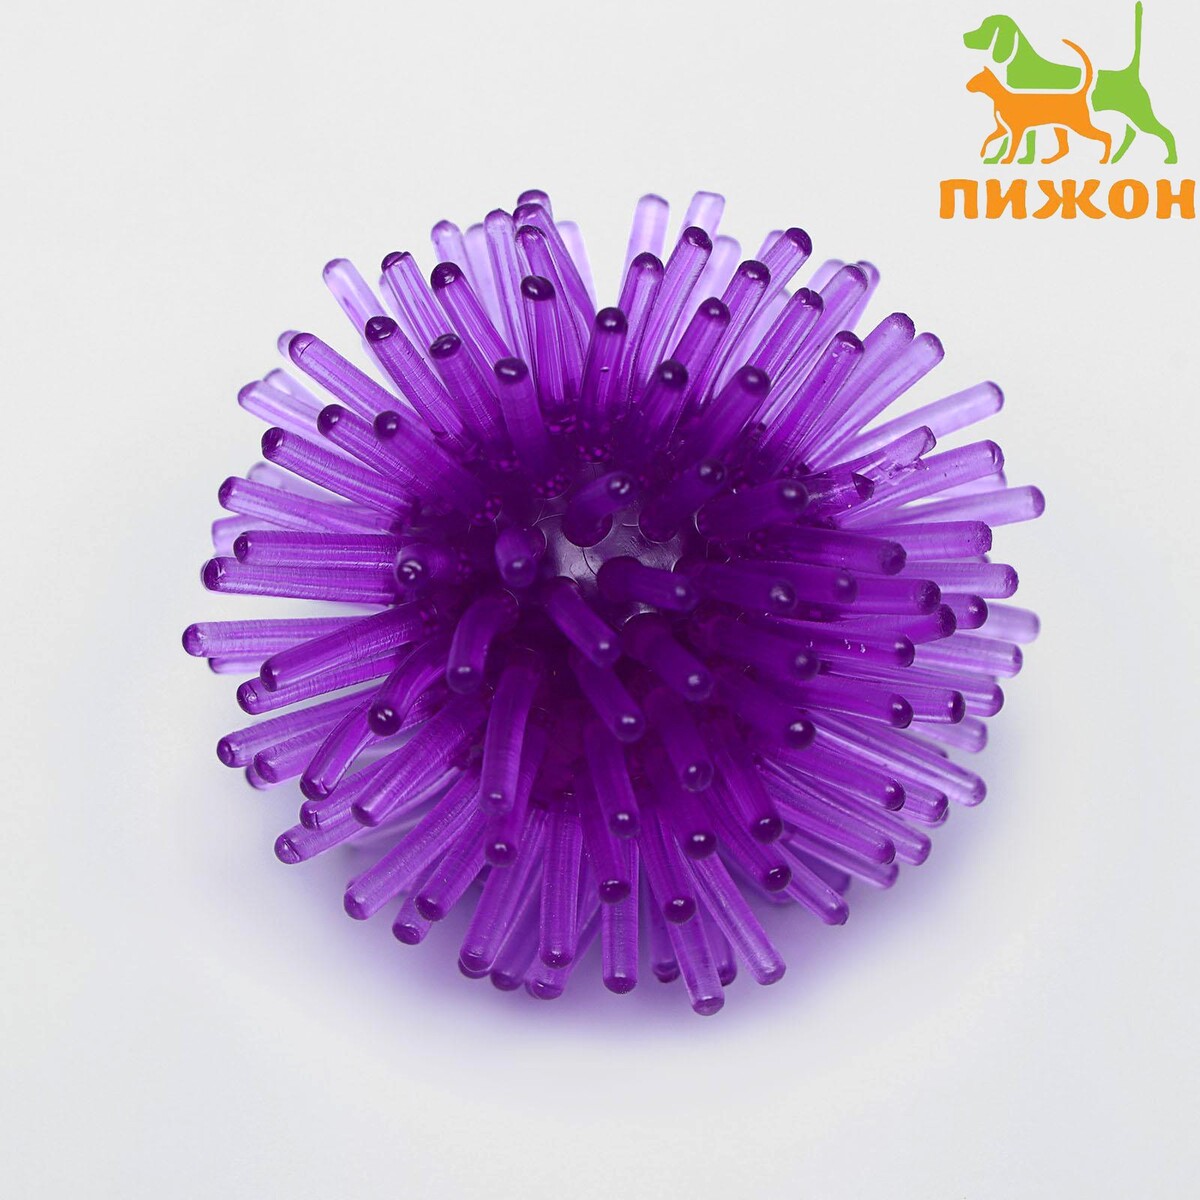 Шарик для кошек игольчатый, мягкий, 5 см, фиолетовый шарик для кошек с бубенчиком